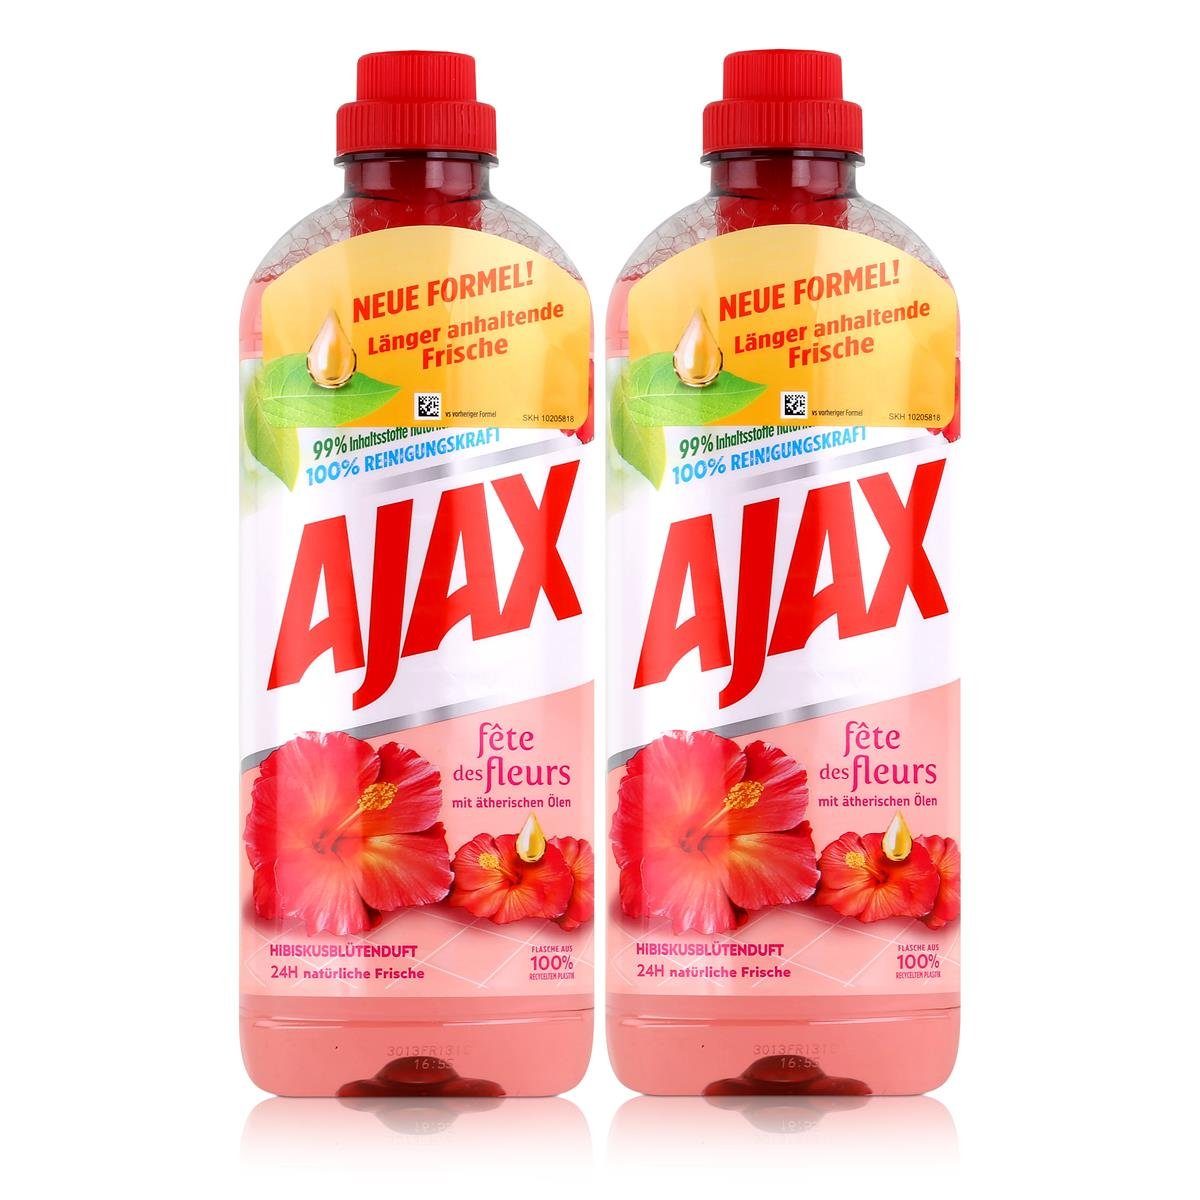 AJAX Ajax Allzweckreiniger Hibiskusblütenduft 1L - 100% Reinigungskraft (2e Allzweckreiniger